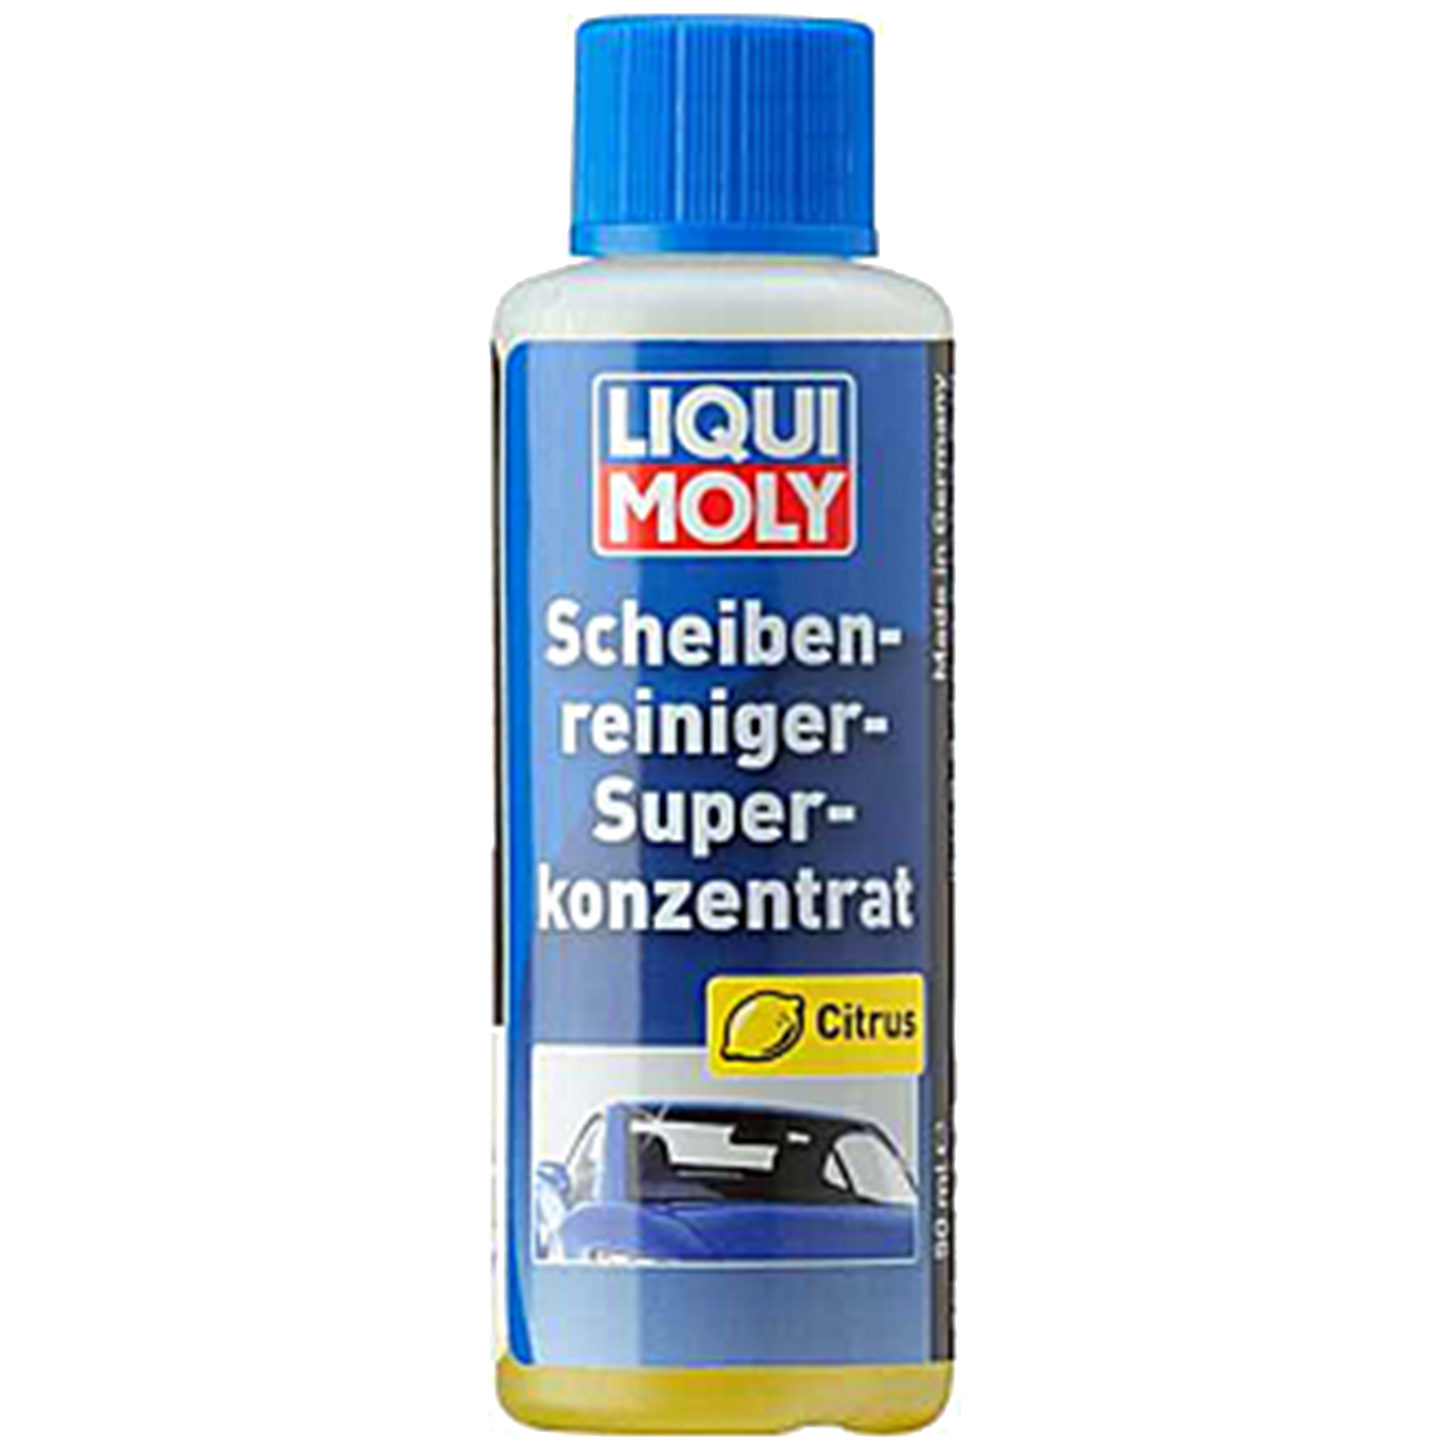 LIQUI MOLY Scheibenreiniger-Superkonzentrat - 50ml